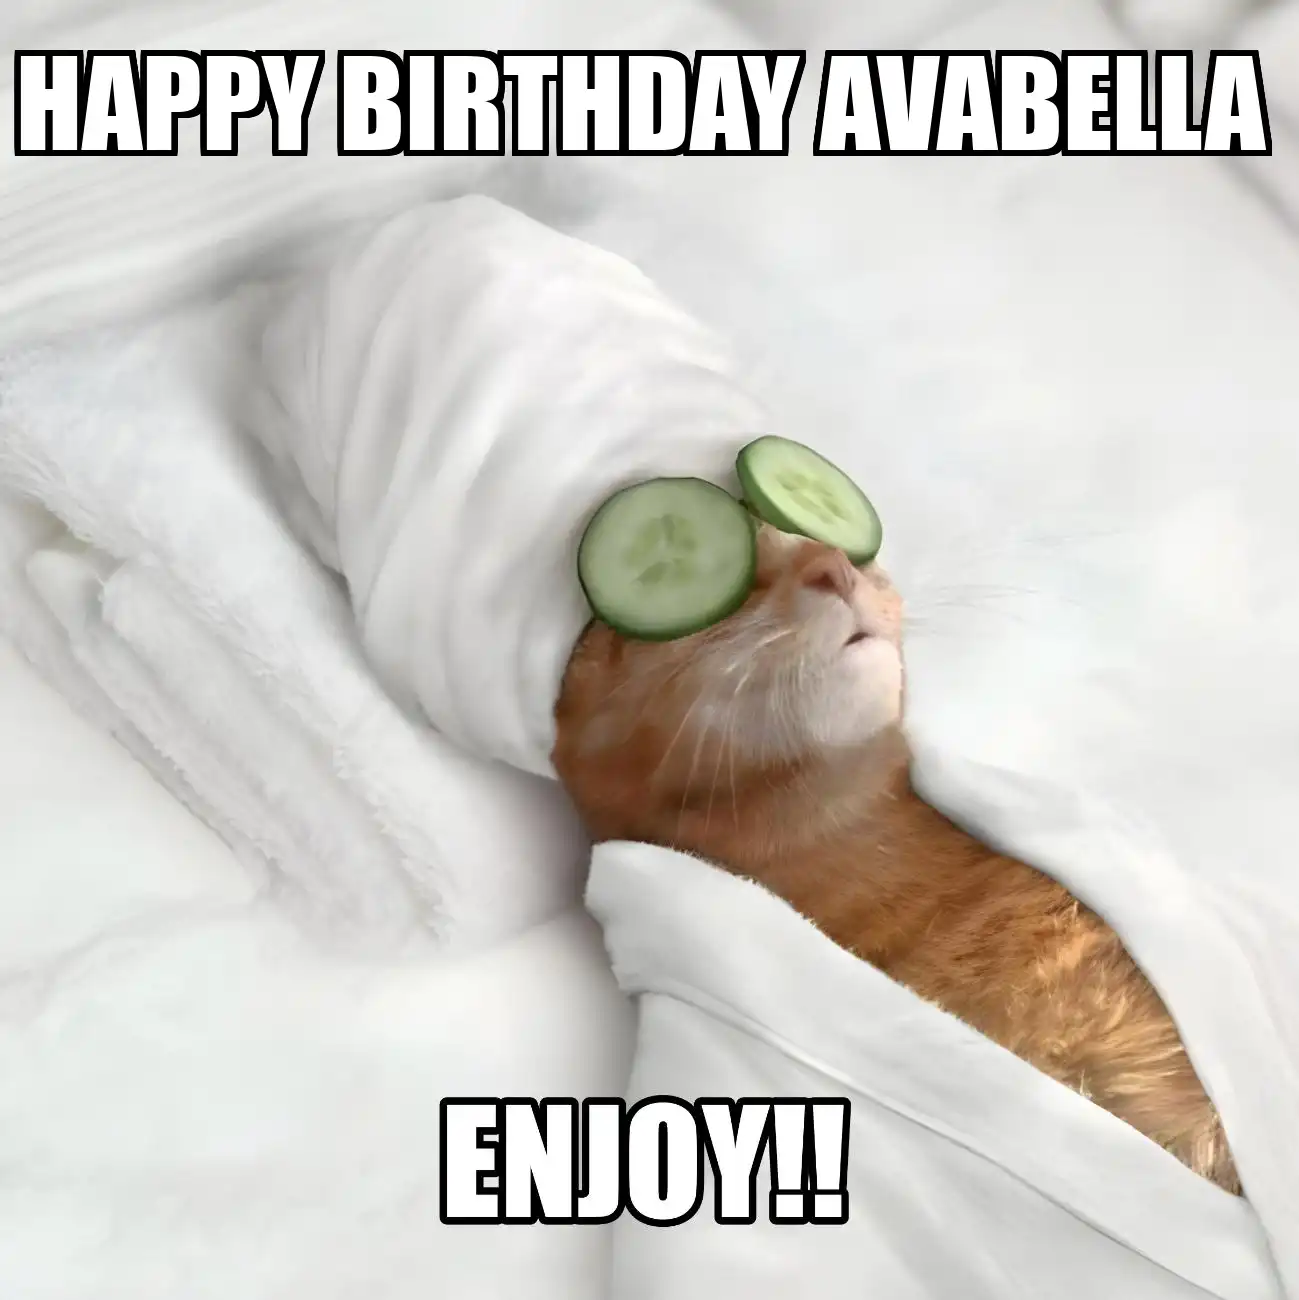 Happy Birthday Avabella Enjoy Cat Meme